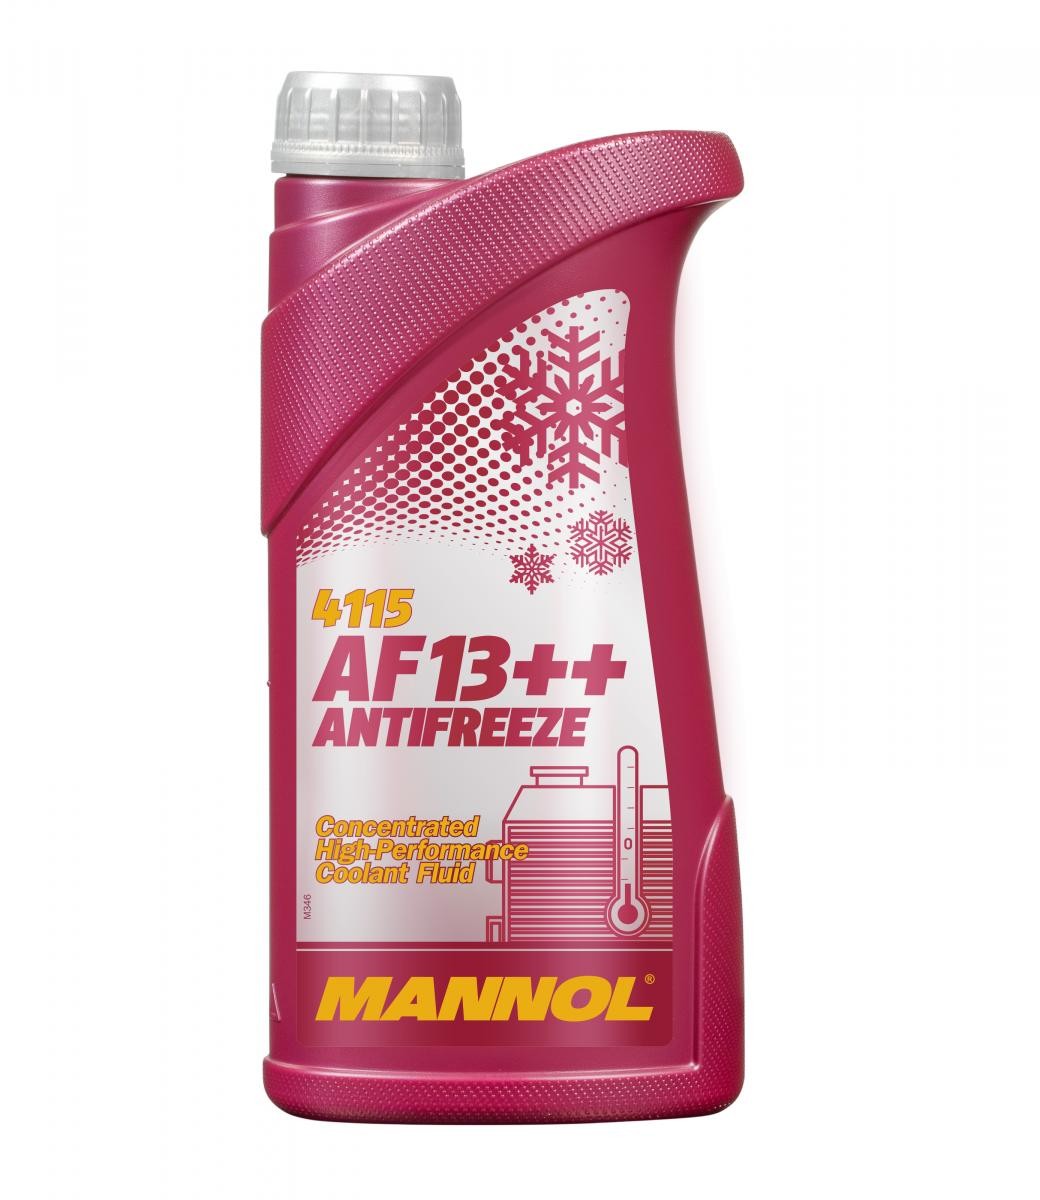 YAMAHA DT Kühlmittel G12 Rot, 1l, -38(50/50) MANNOL AF13++, High-performance MN4115-1